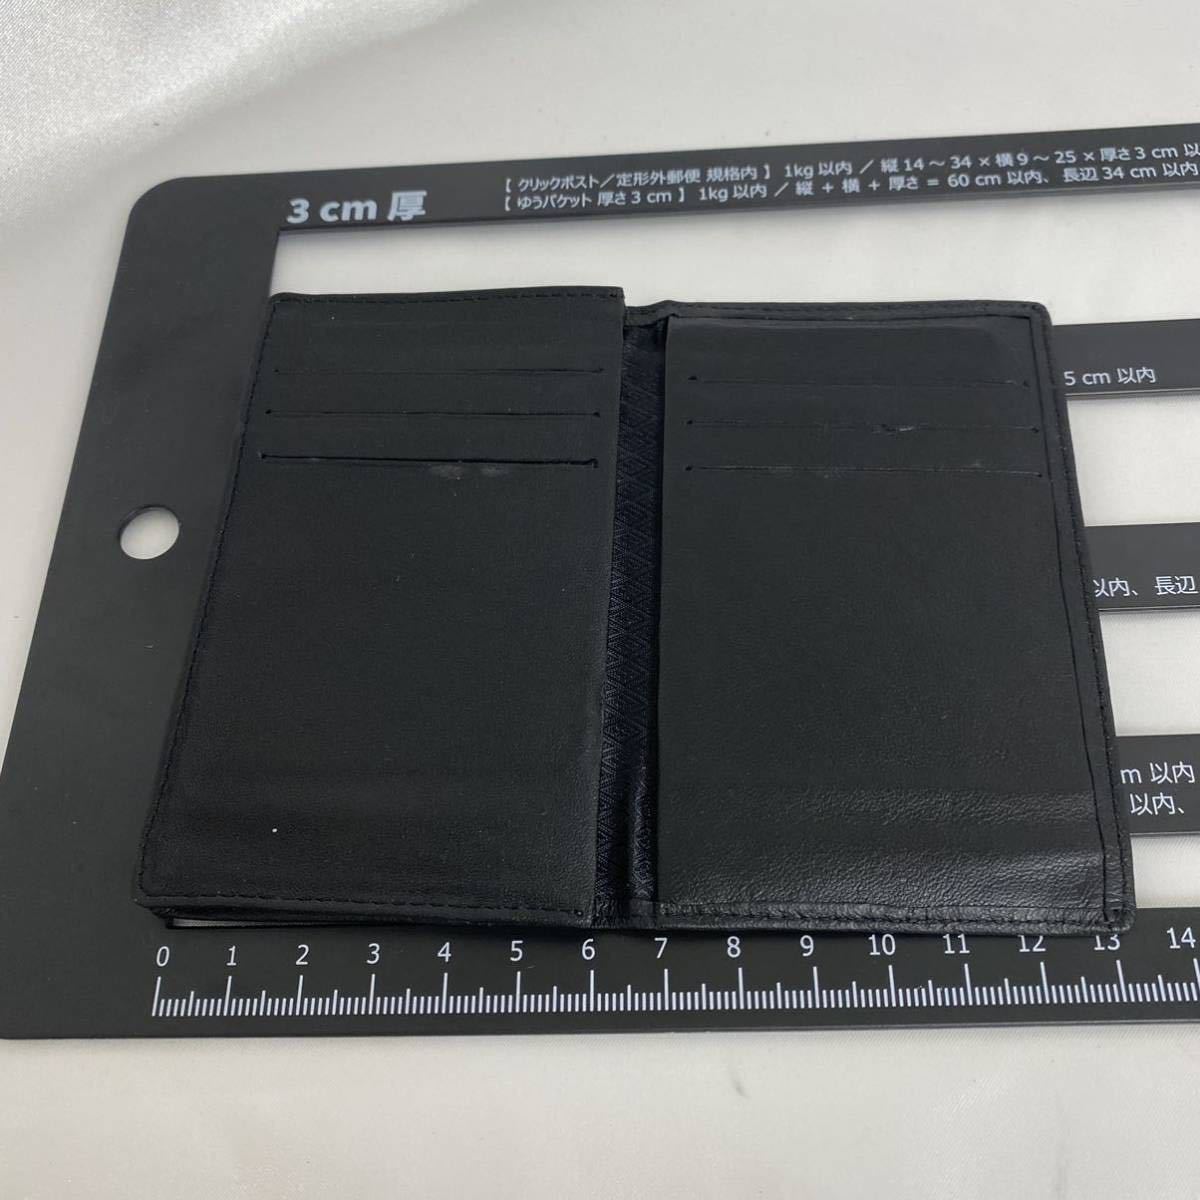 【未使用品】磁気カード保管ケース マグネットプロテクター カードケース 希少 ブラック レディース メンズ MAGNET PROTECTOR 大同特殊鋼